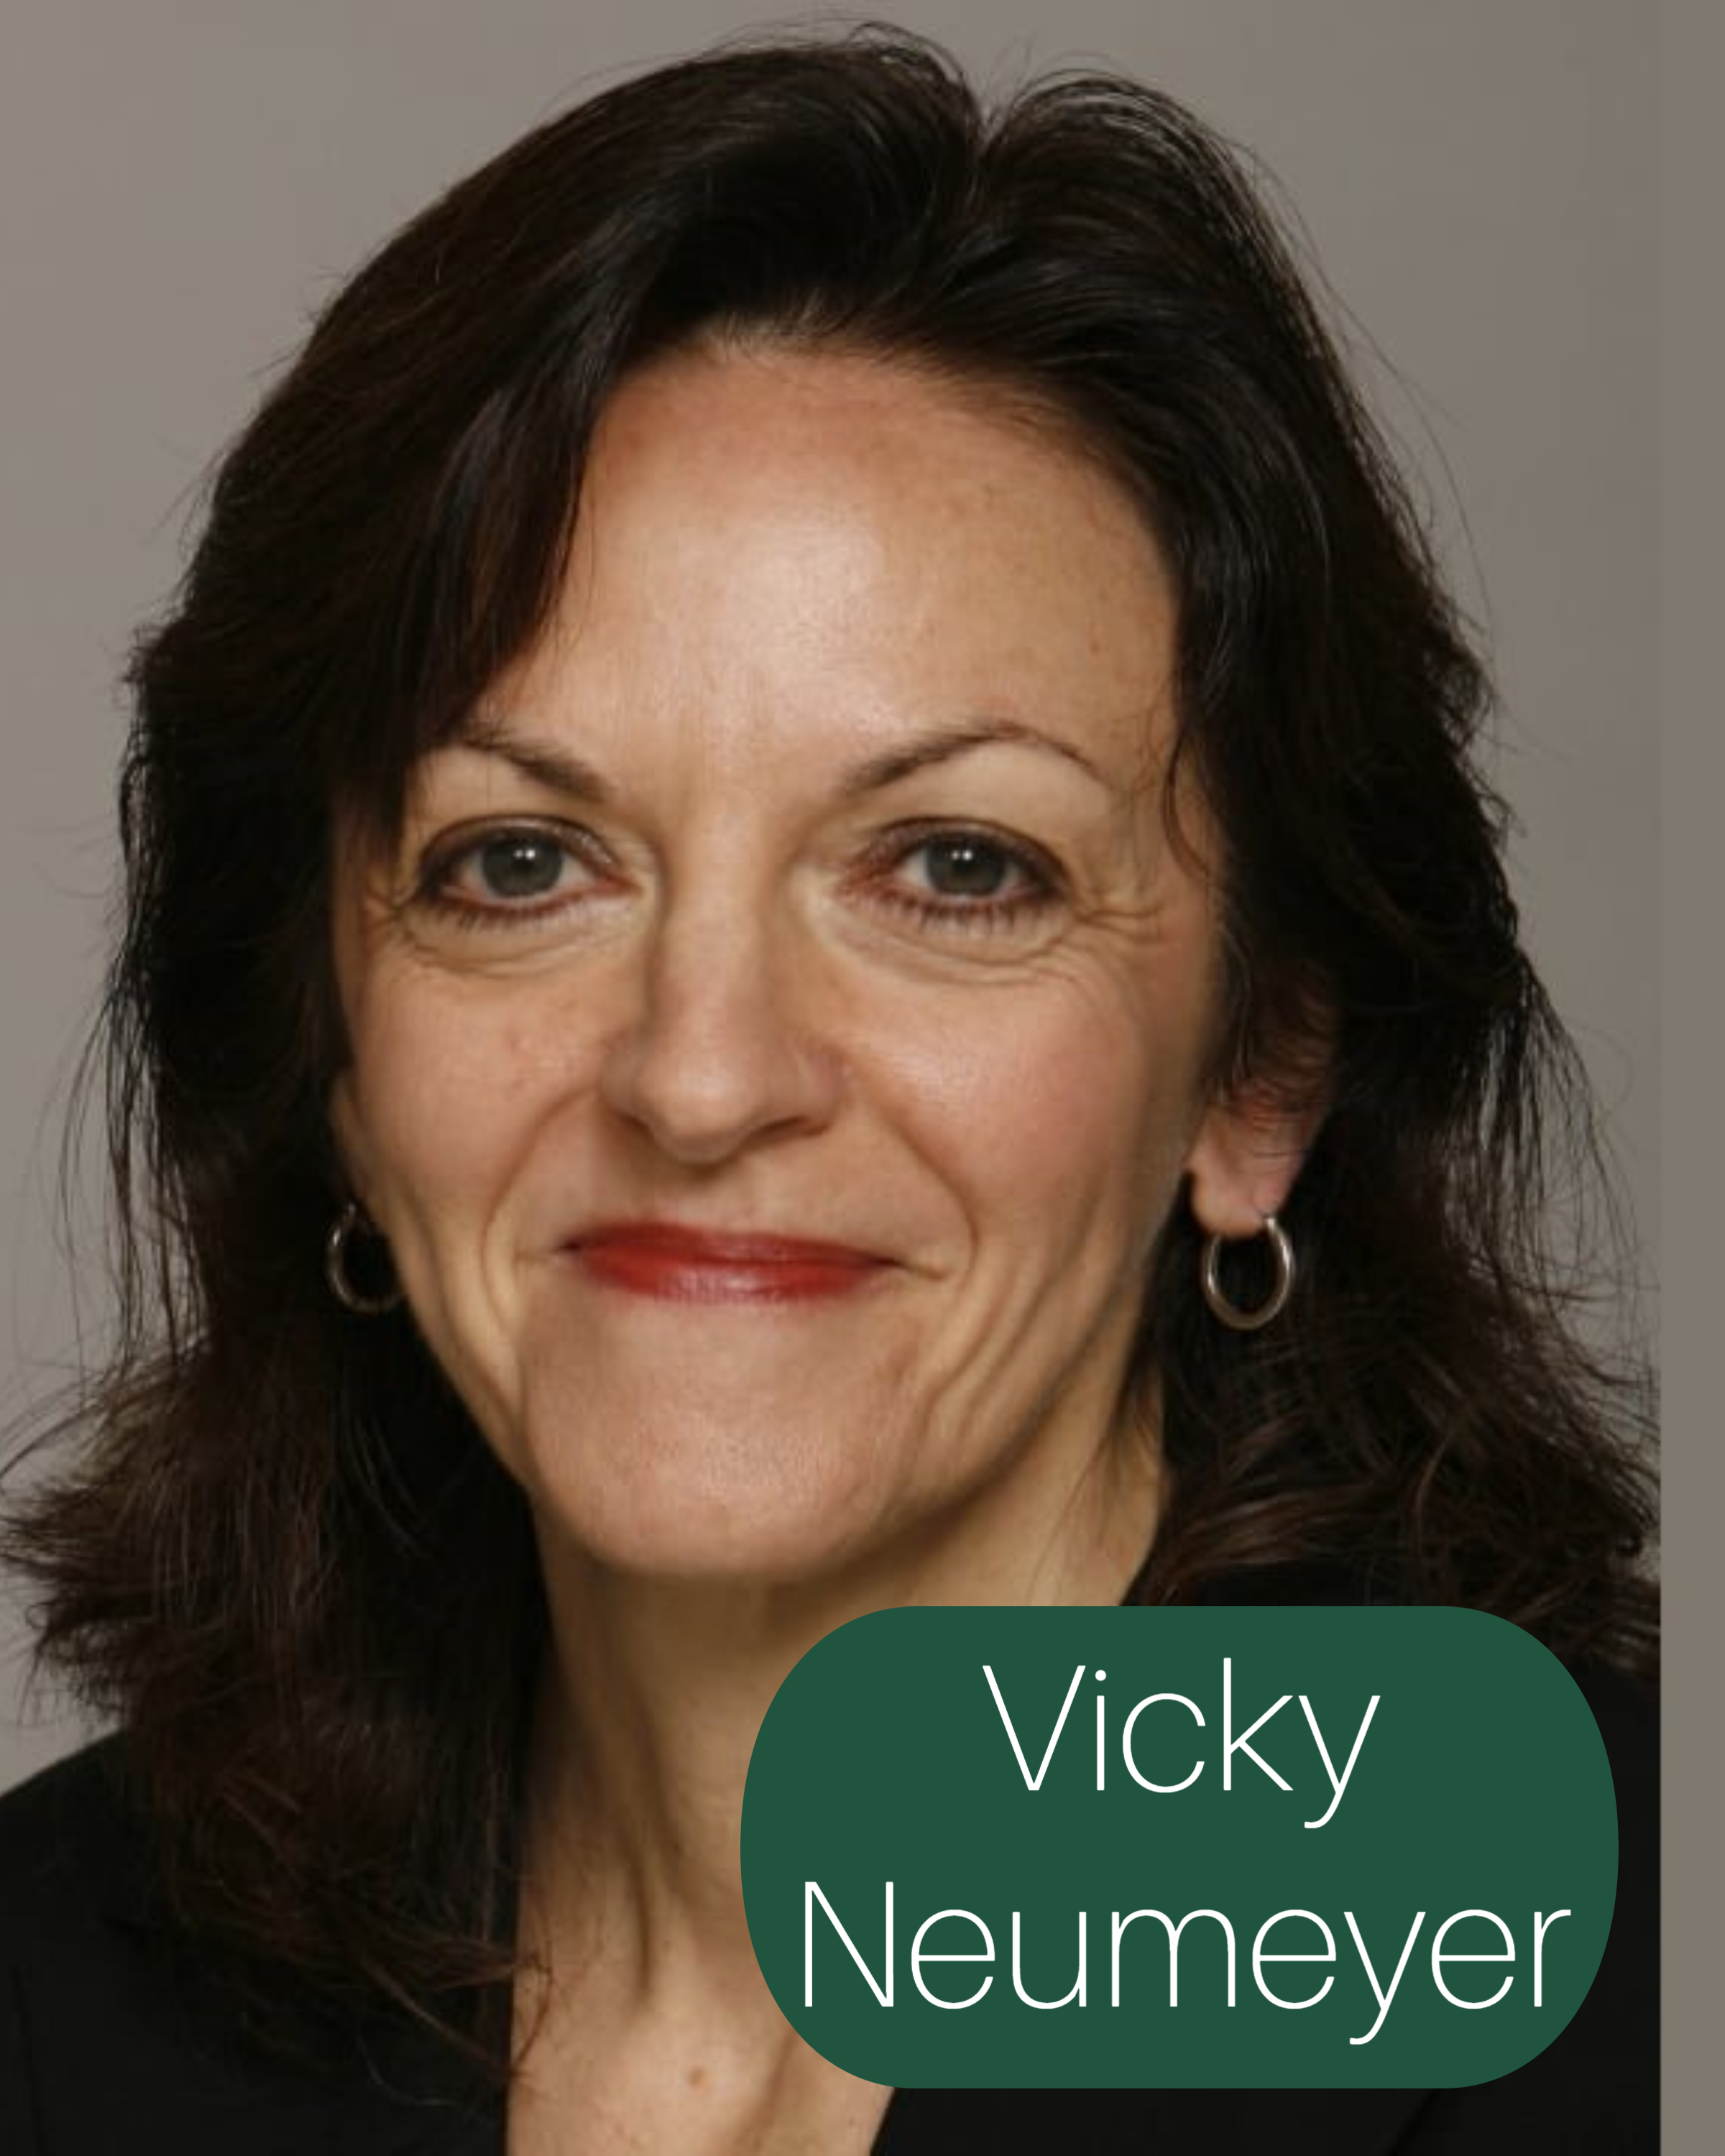 Vicky Neumeyer